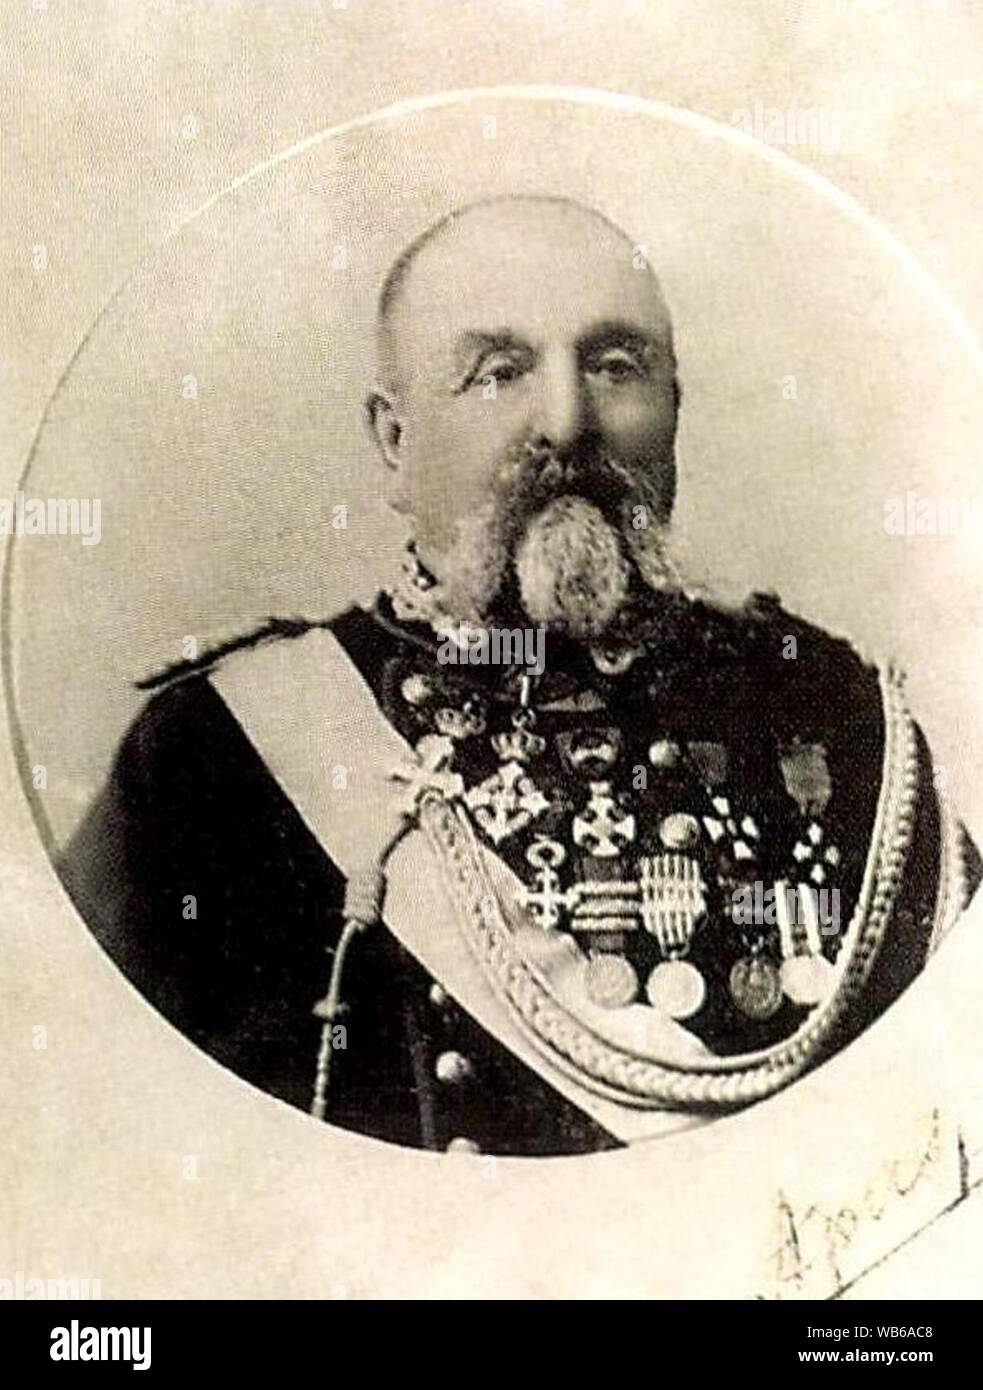 Eberhardt Károly (Pápoc, 1825. január 20. – Gecse, 1906. december 8.) szabadságharcos honvédtiszt, olasz tábornok. Stock Photo